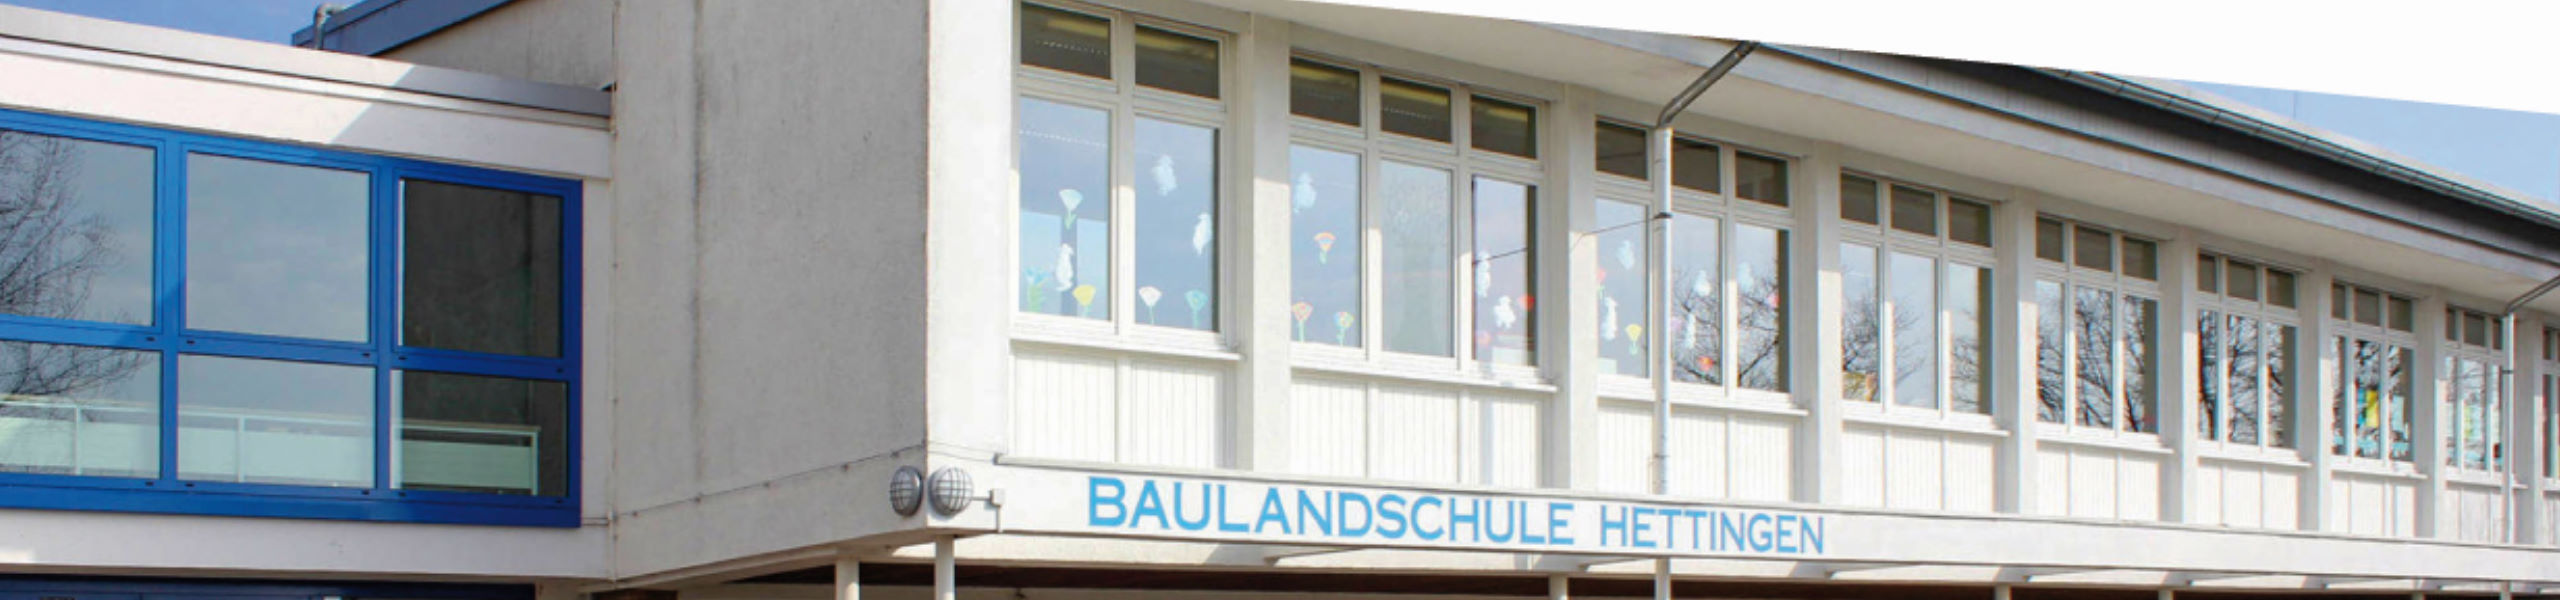 Baulandschule Hettingen - Über die Baulandschule